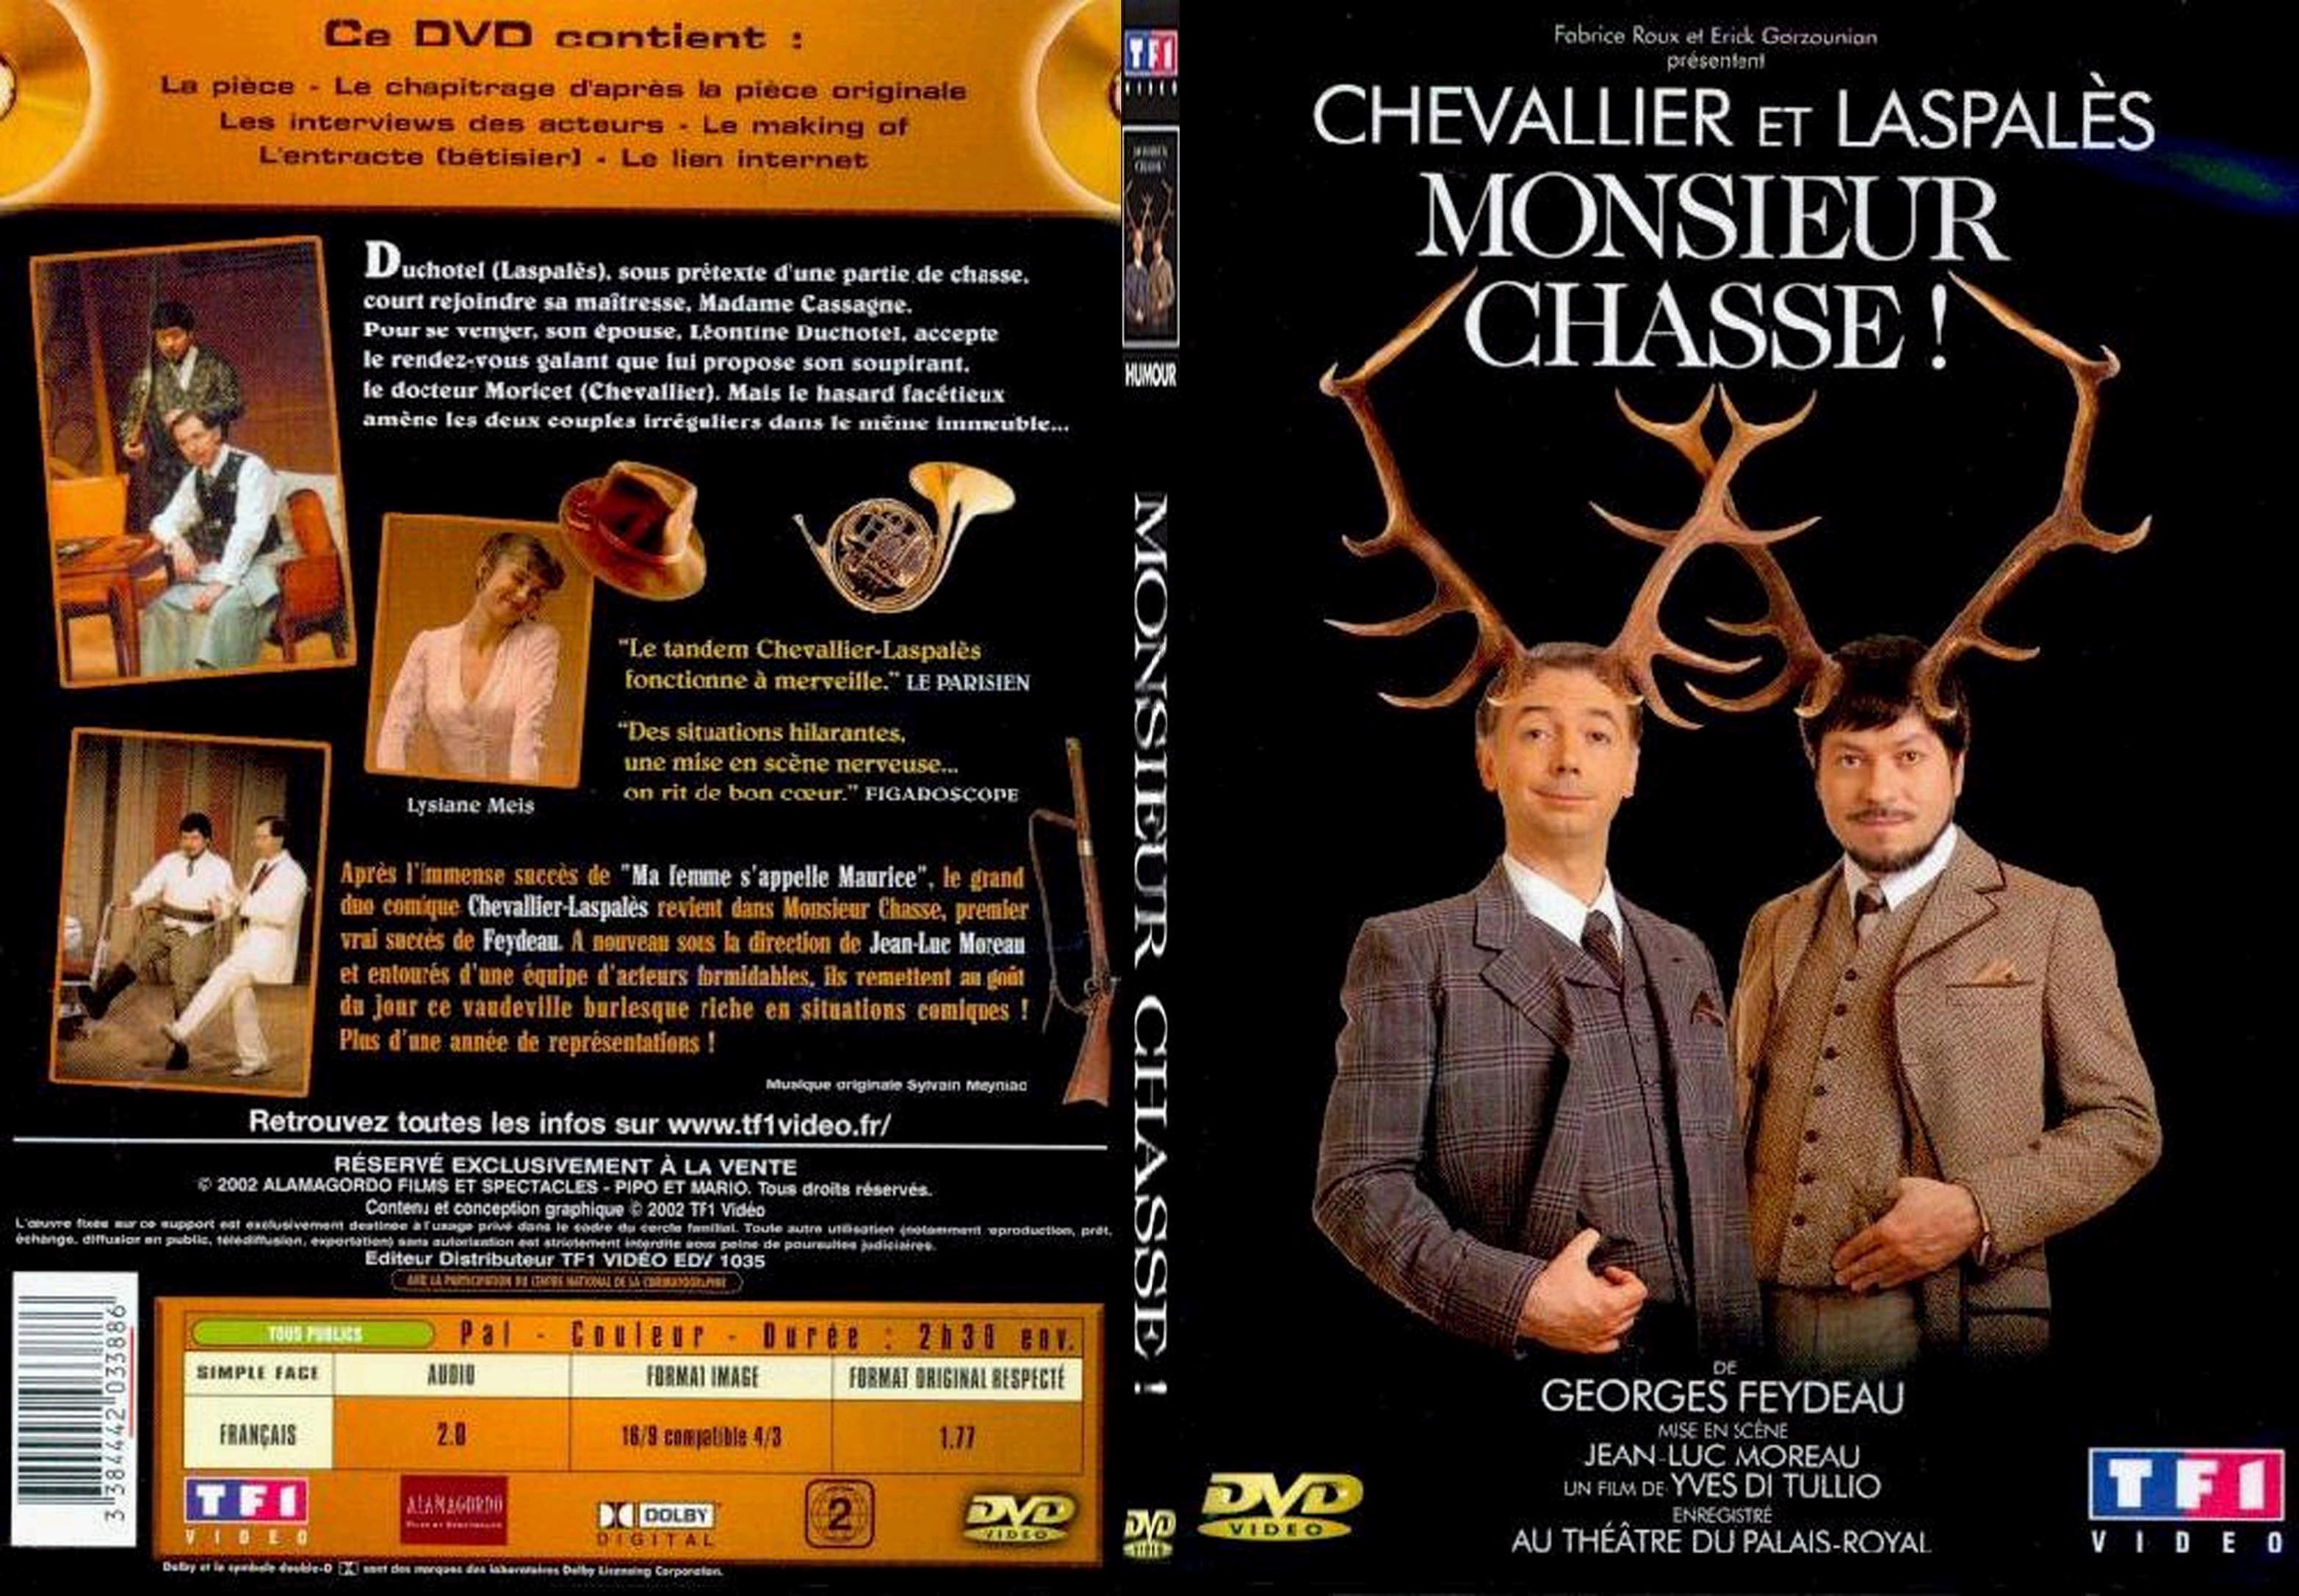 Jaquette DVD Chevalier et Laspales monsieur chasse - SLIM